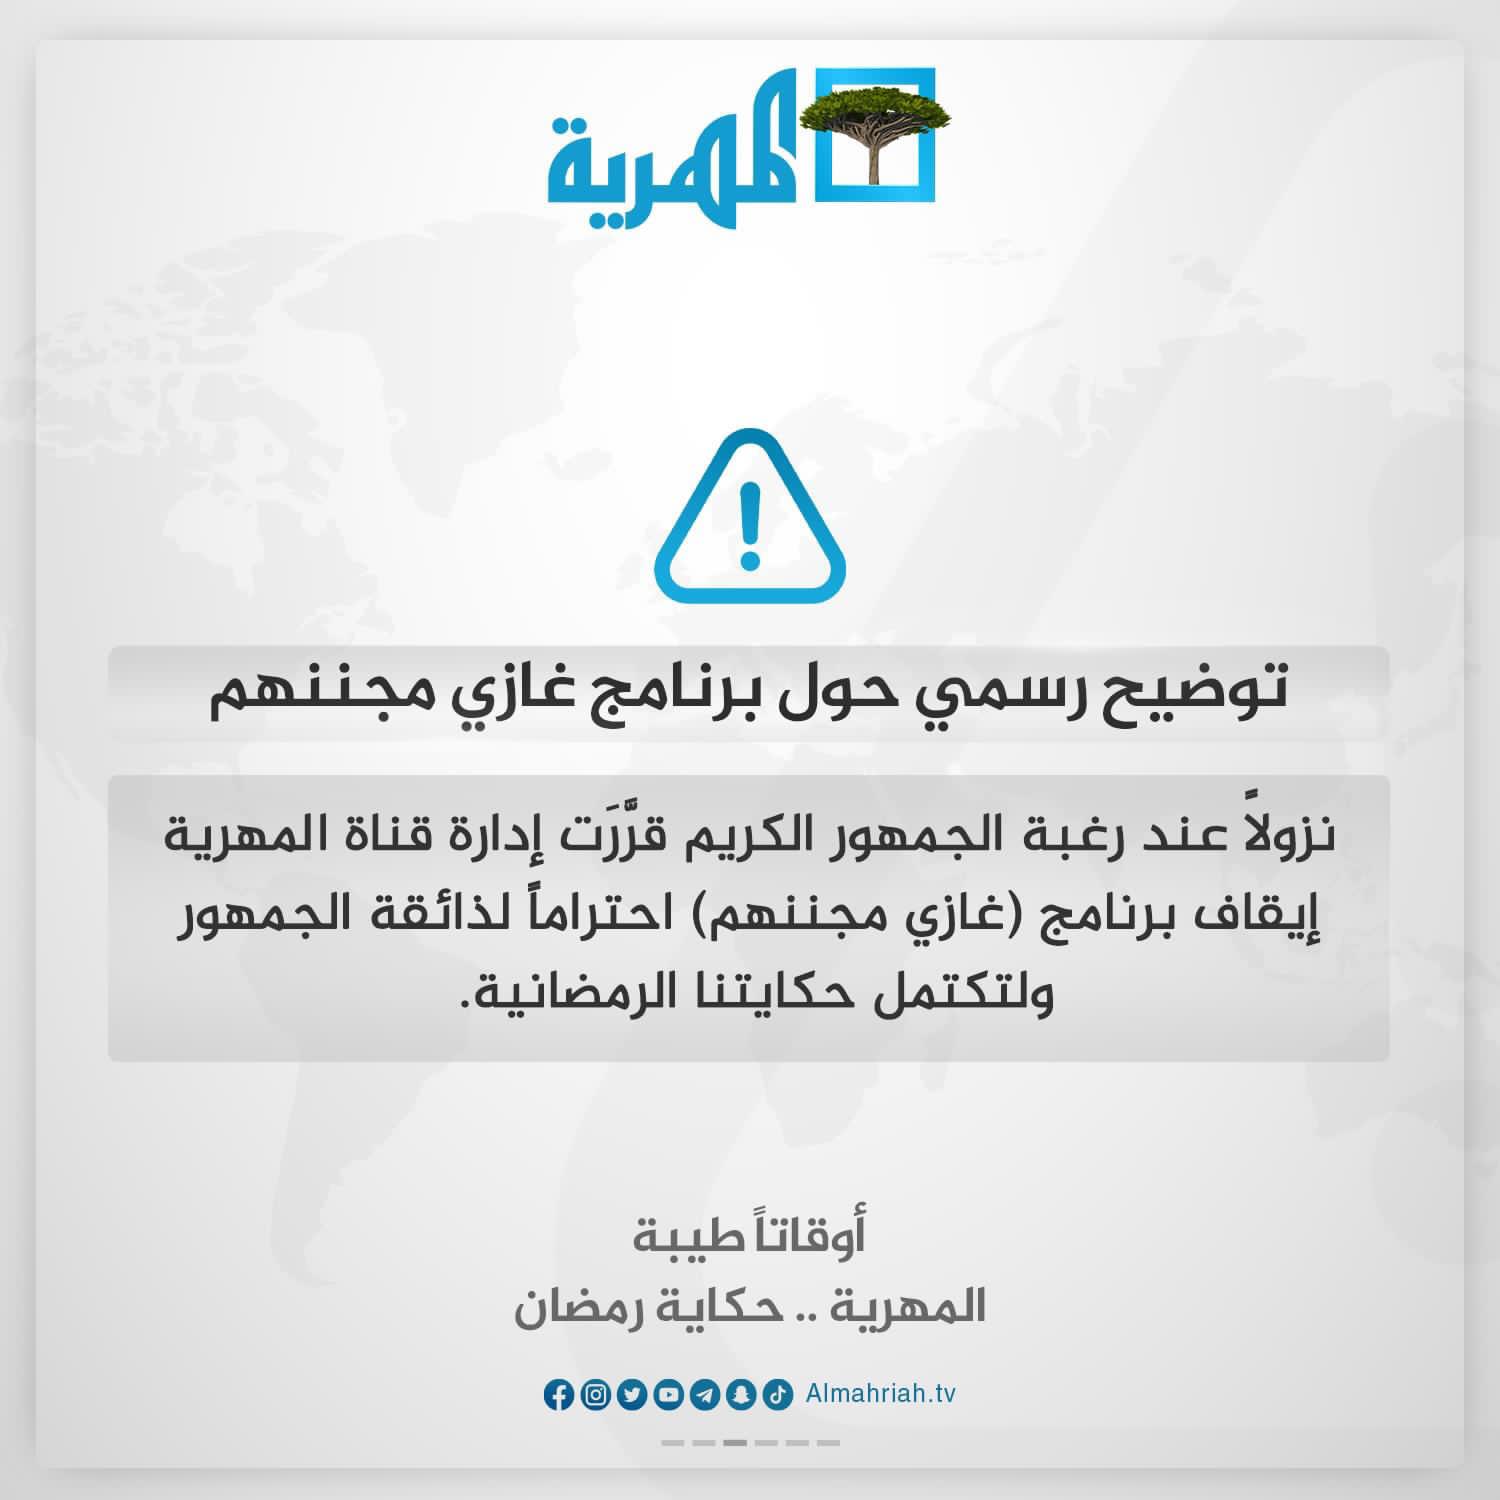 قناة يمنية تعلن إيقاف أحد برامجها الرمضانية بعد أن أثار جدلا واسعا على منصات التواصل